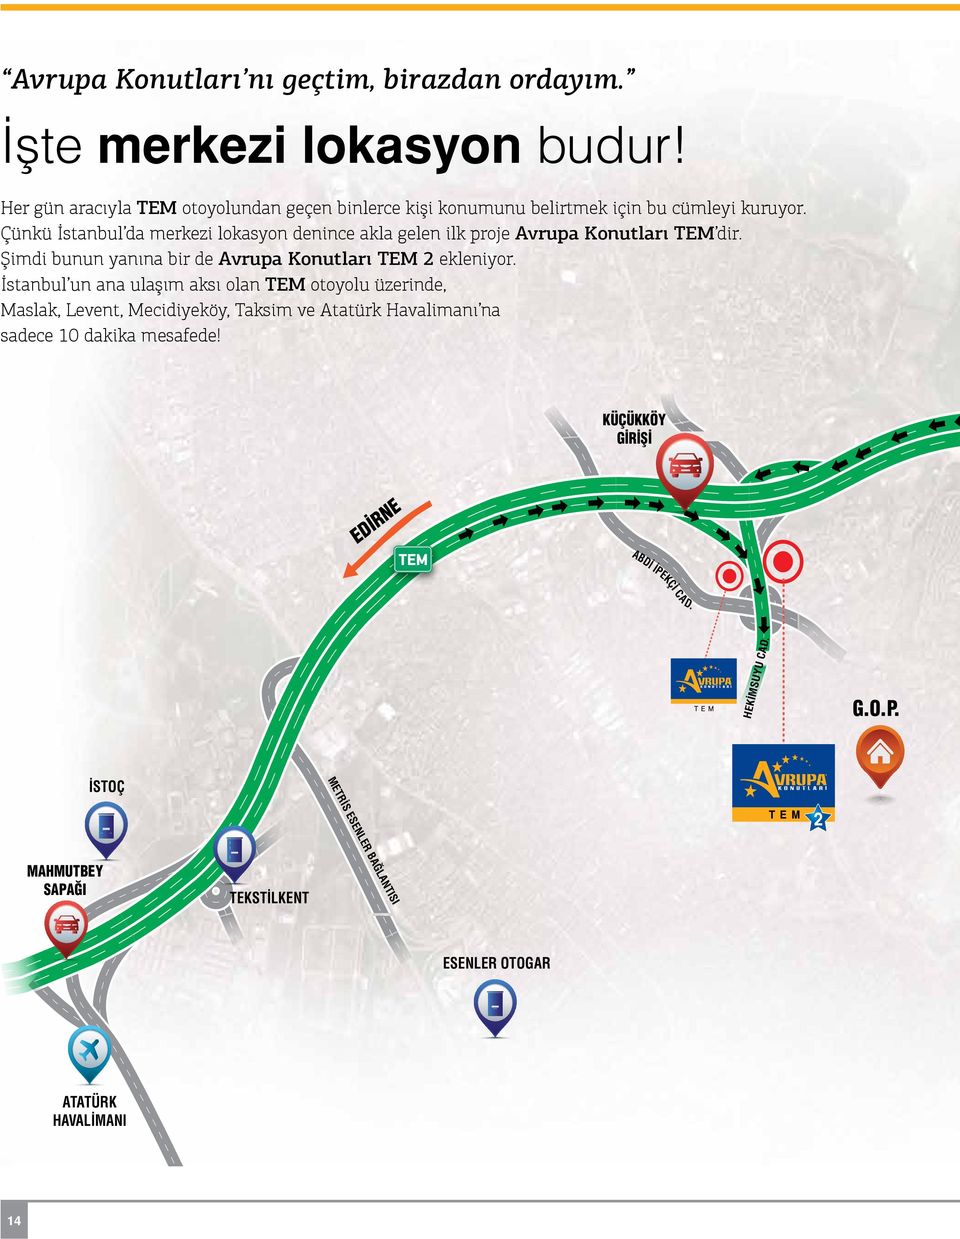 Çünkü İstanbul da merkezi lokasyon denince akla gelen ilk proje Avrupa Konutları TEM dir. Şimdi bunun yanına bir de Avrupa Konutları TEM 2 ekleniyor.